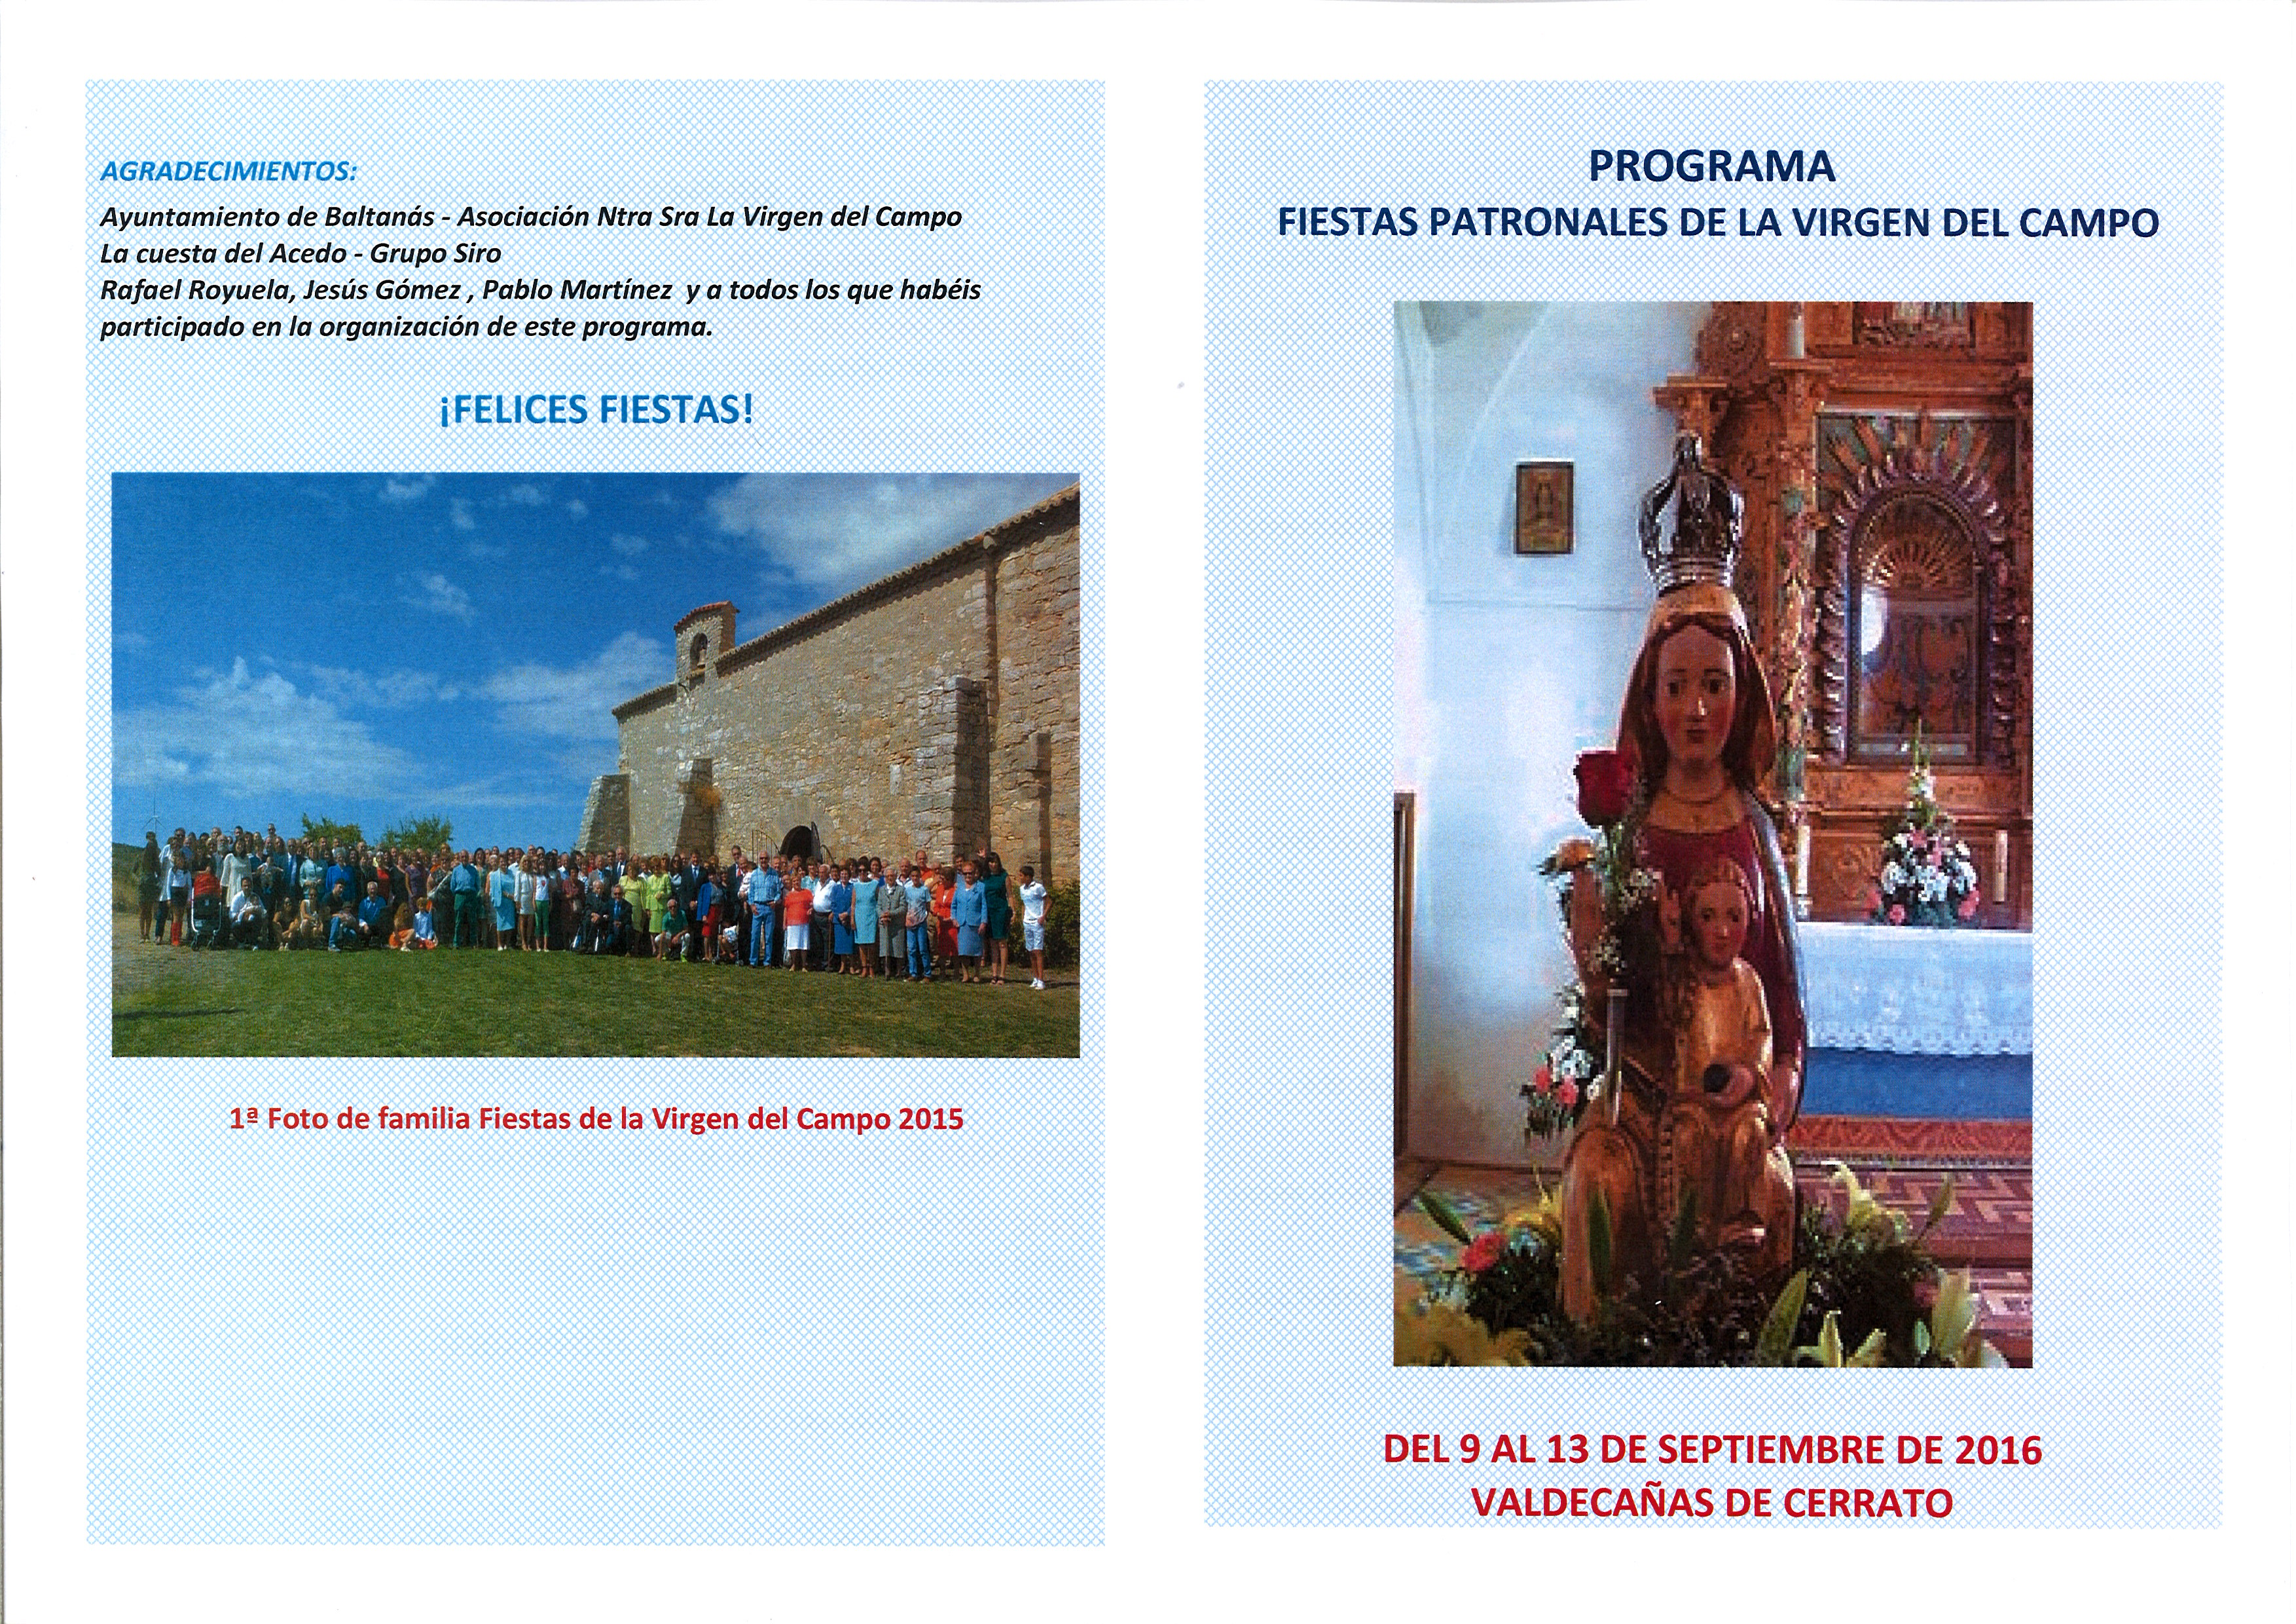 Programa Fiestas Patronales de la Virgen del Campo de Valdecañas de Cerrato